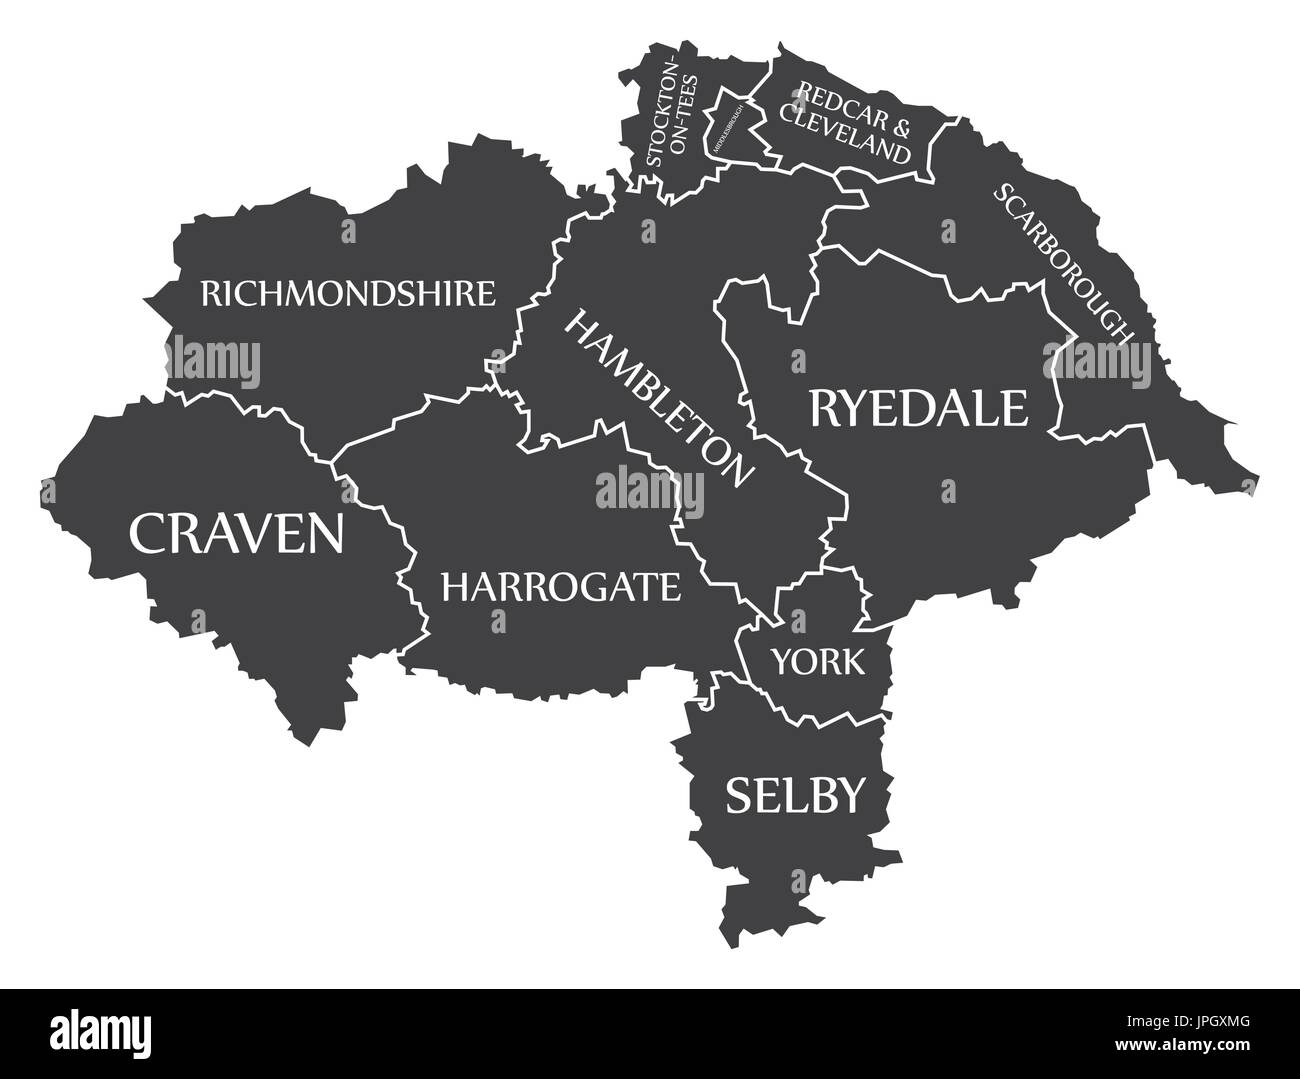 North Yorkshire county England UK schwarz-Karte mit weißen Etiketten Abbildung Stock Vektor